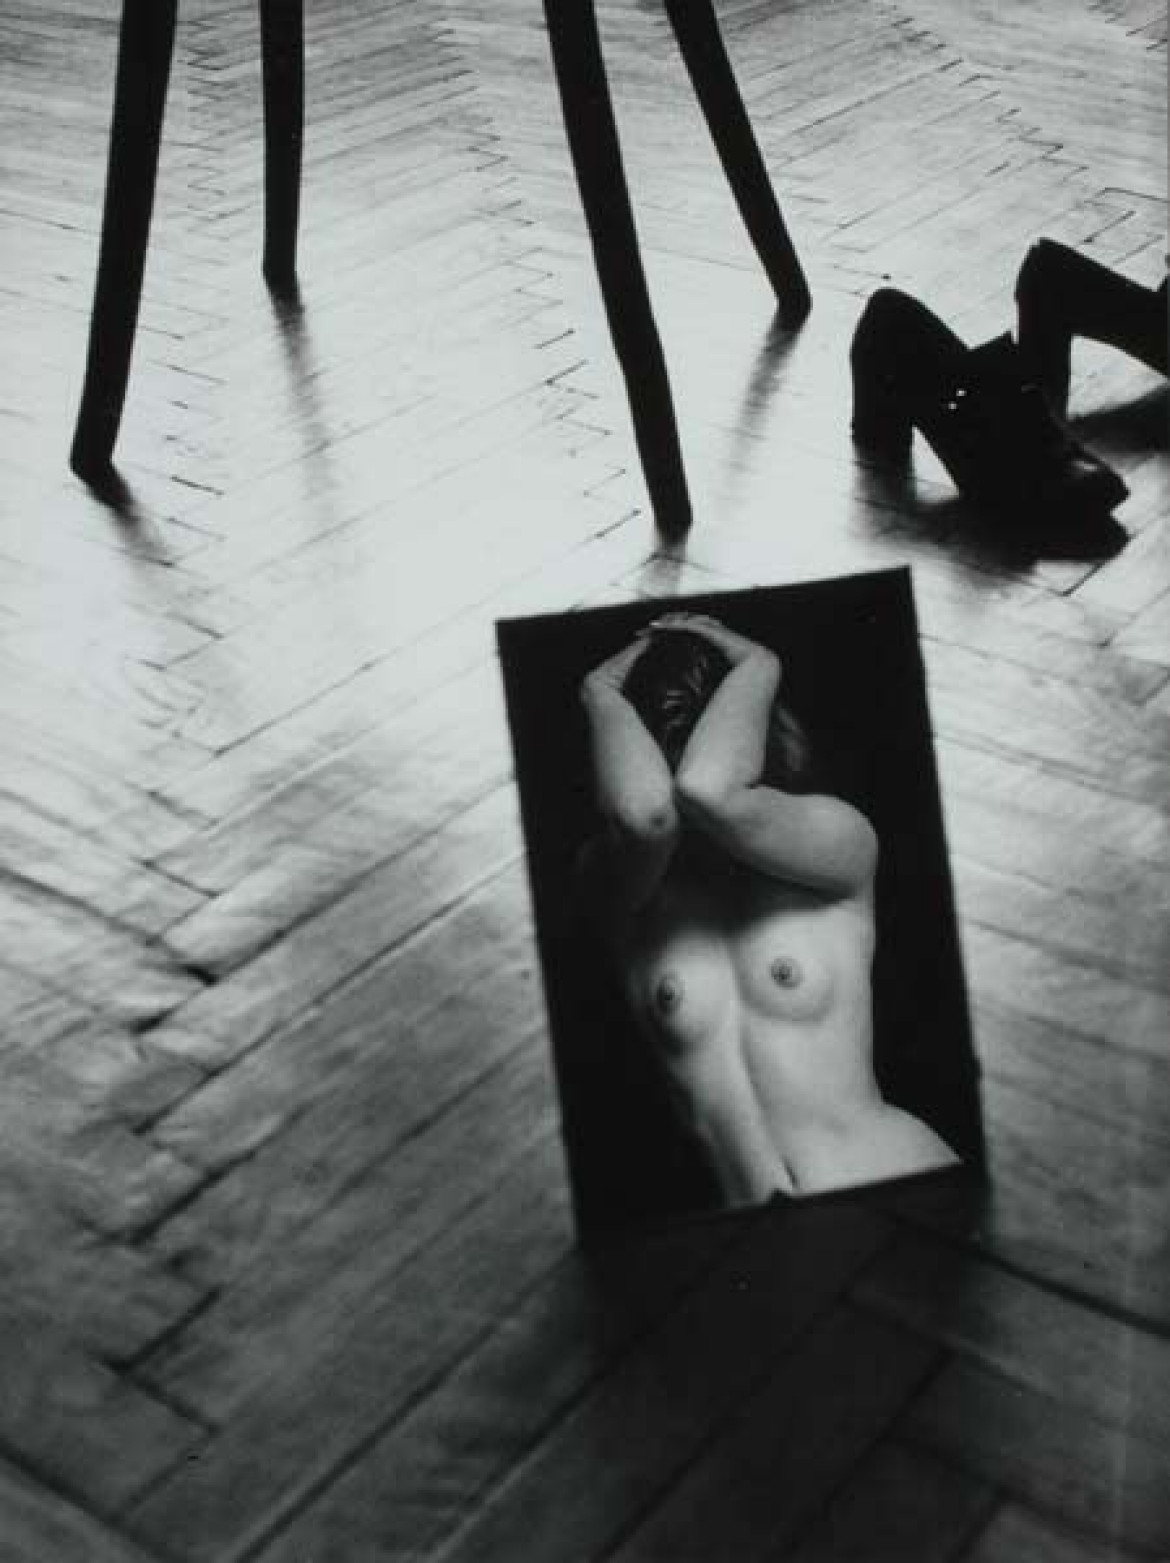 fot. Wojciech Plewiński z wystawy "Trzy razy ciało"